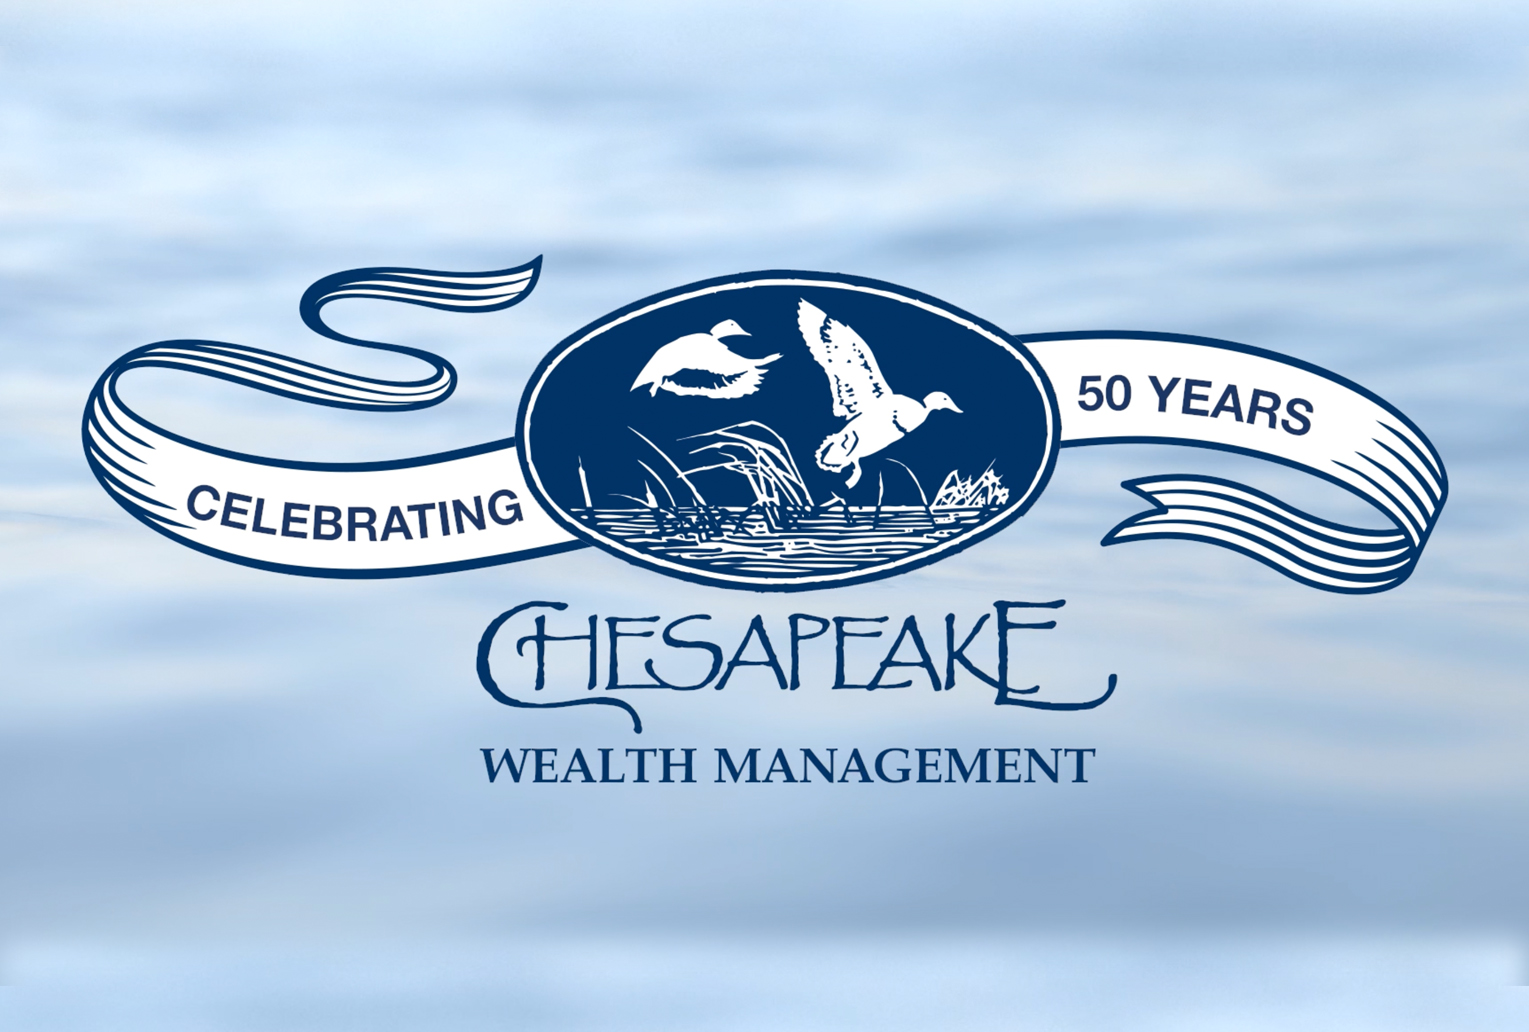 Chesapeake Wealth Management